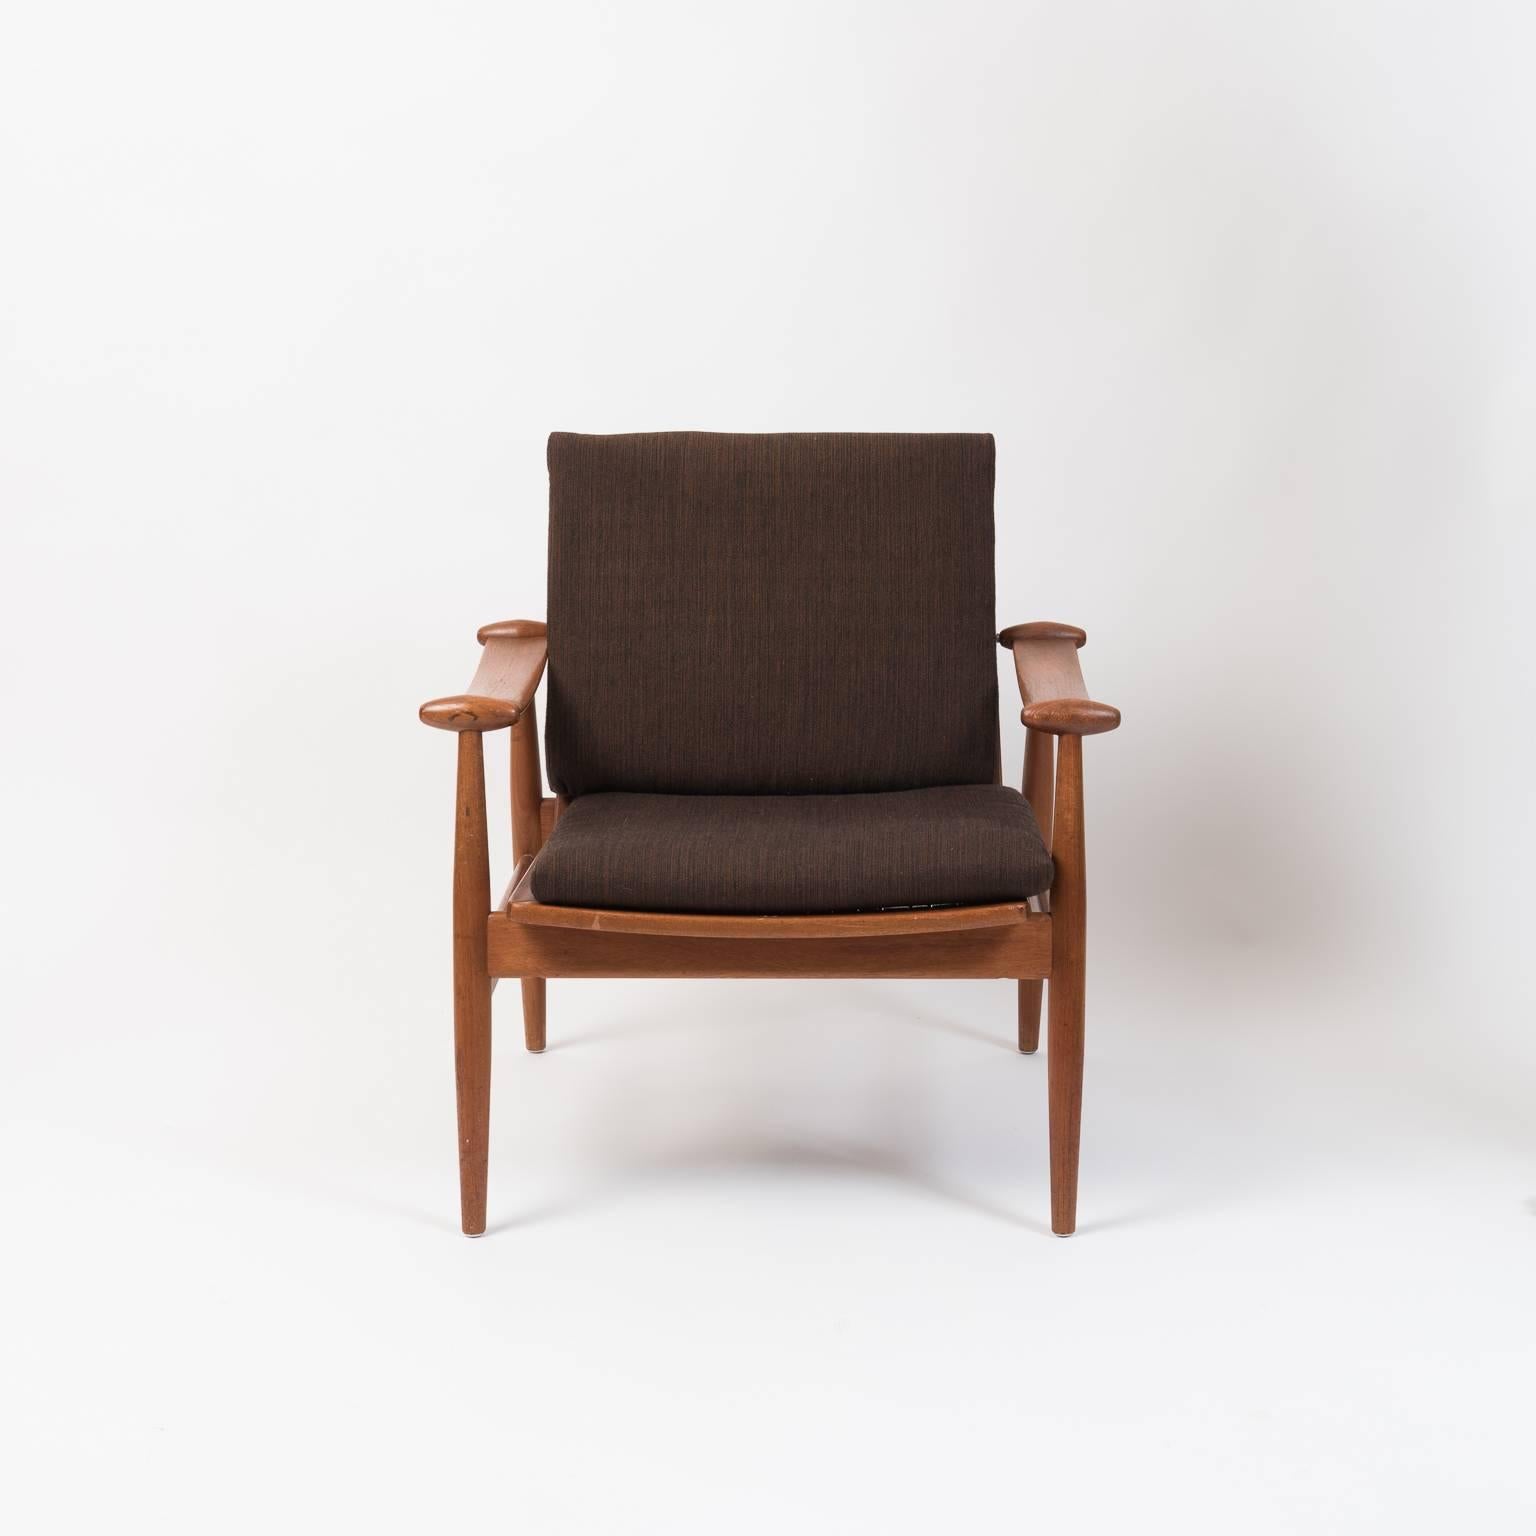 Mid-20th Century Scandinavian Modern Spade Chair by Finn Juhl for France & Daverkosen